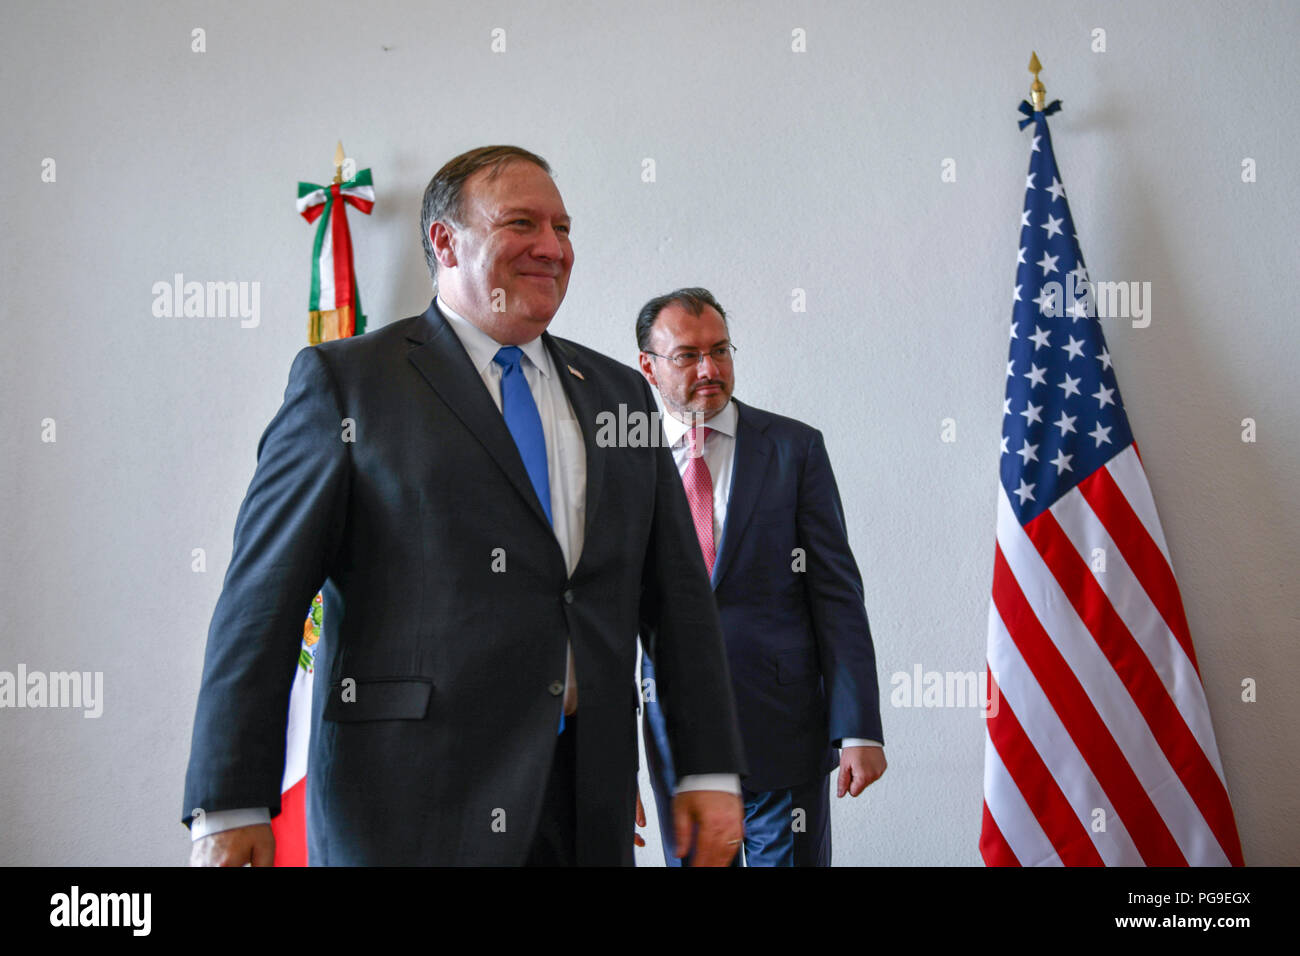 La secrétaire d'État des États-Unis, Michael R. Pompeo rencontre le secrétaire mexicain des affaires étrangères Luis Videgaray Caso à Mexico, Mexique le 13 juillet 2018. Banque D'Images